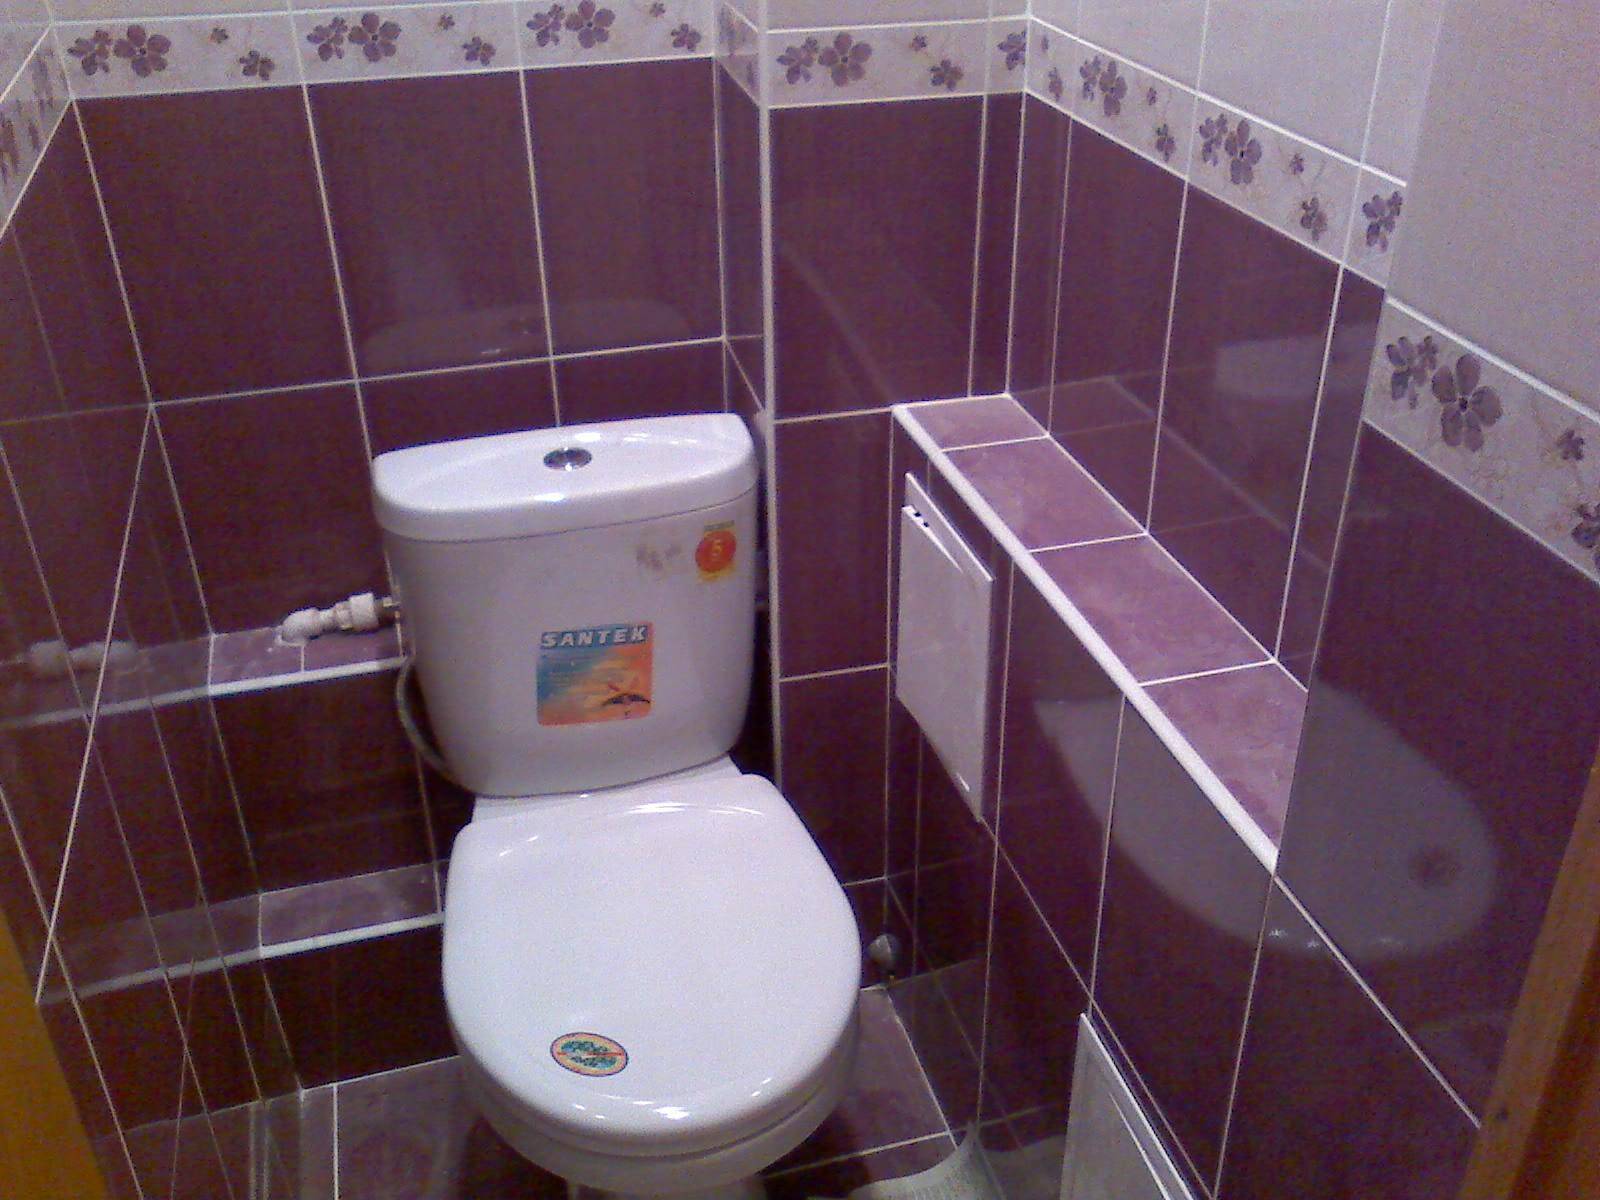 Ремонт ванной комнаты своими руками: видео и фото, инструкция для начинающих